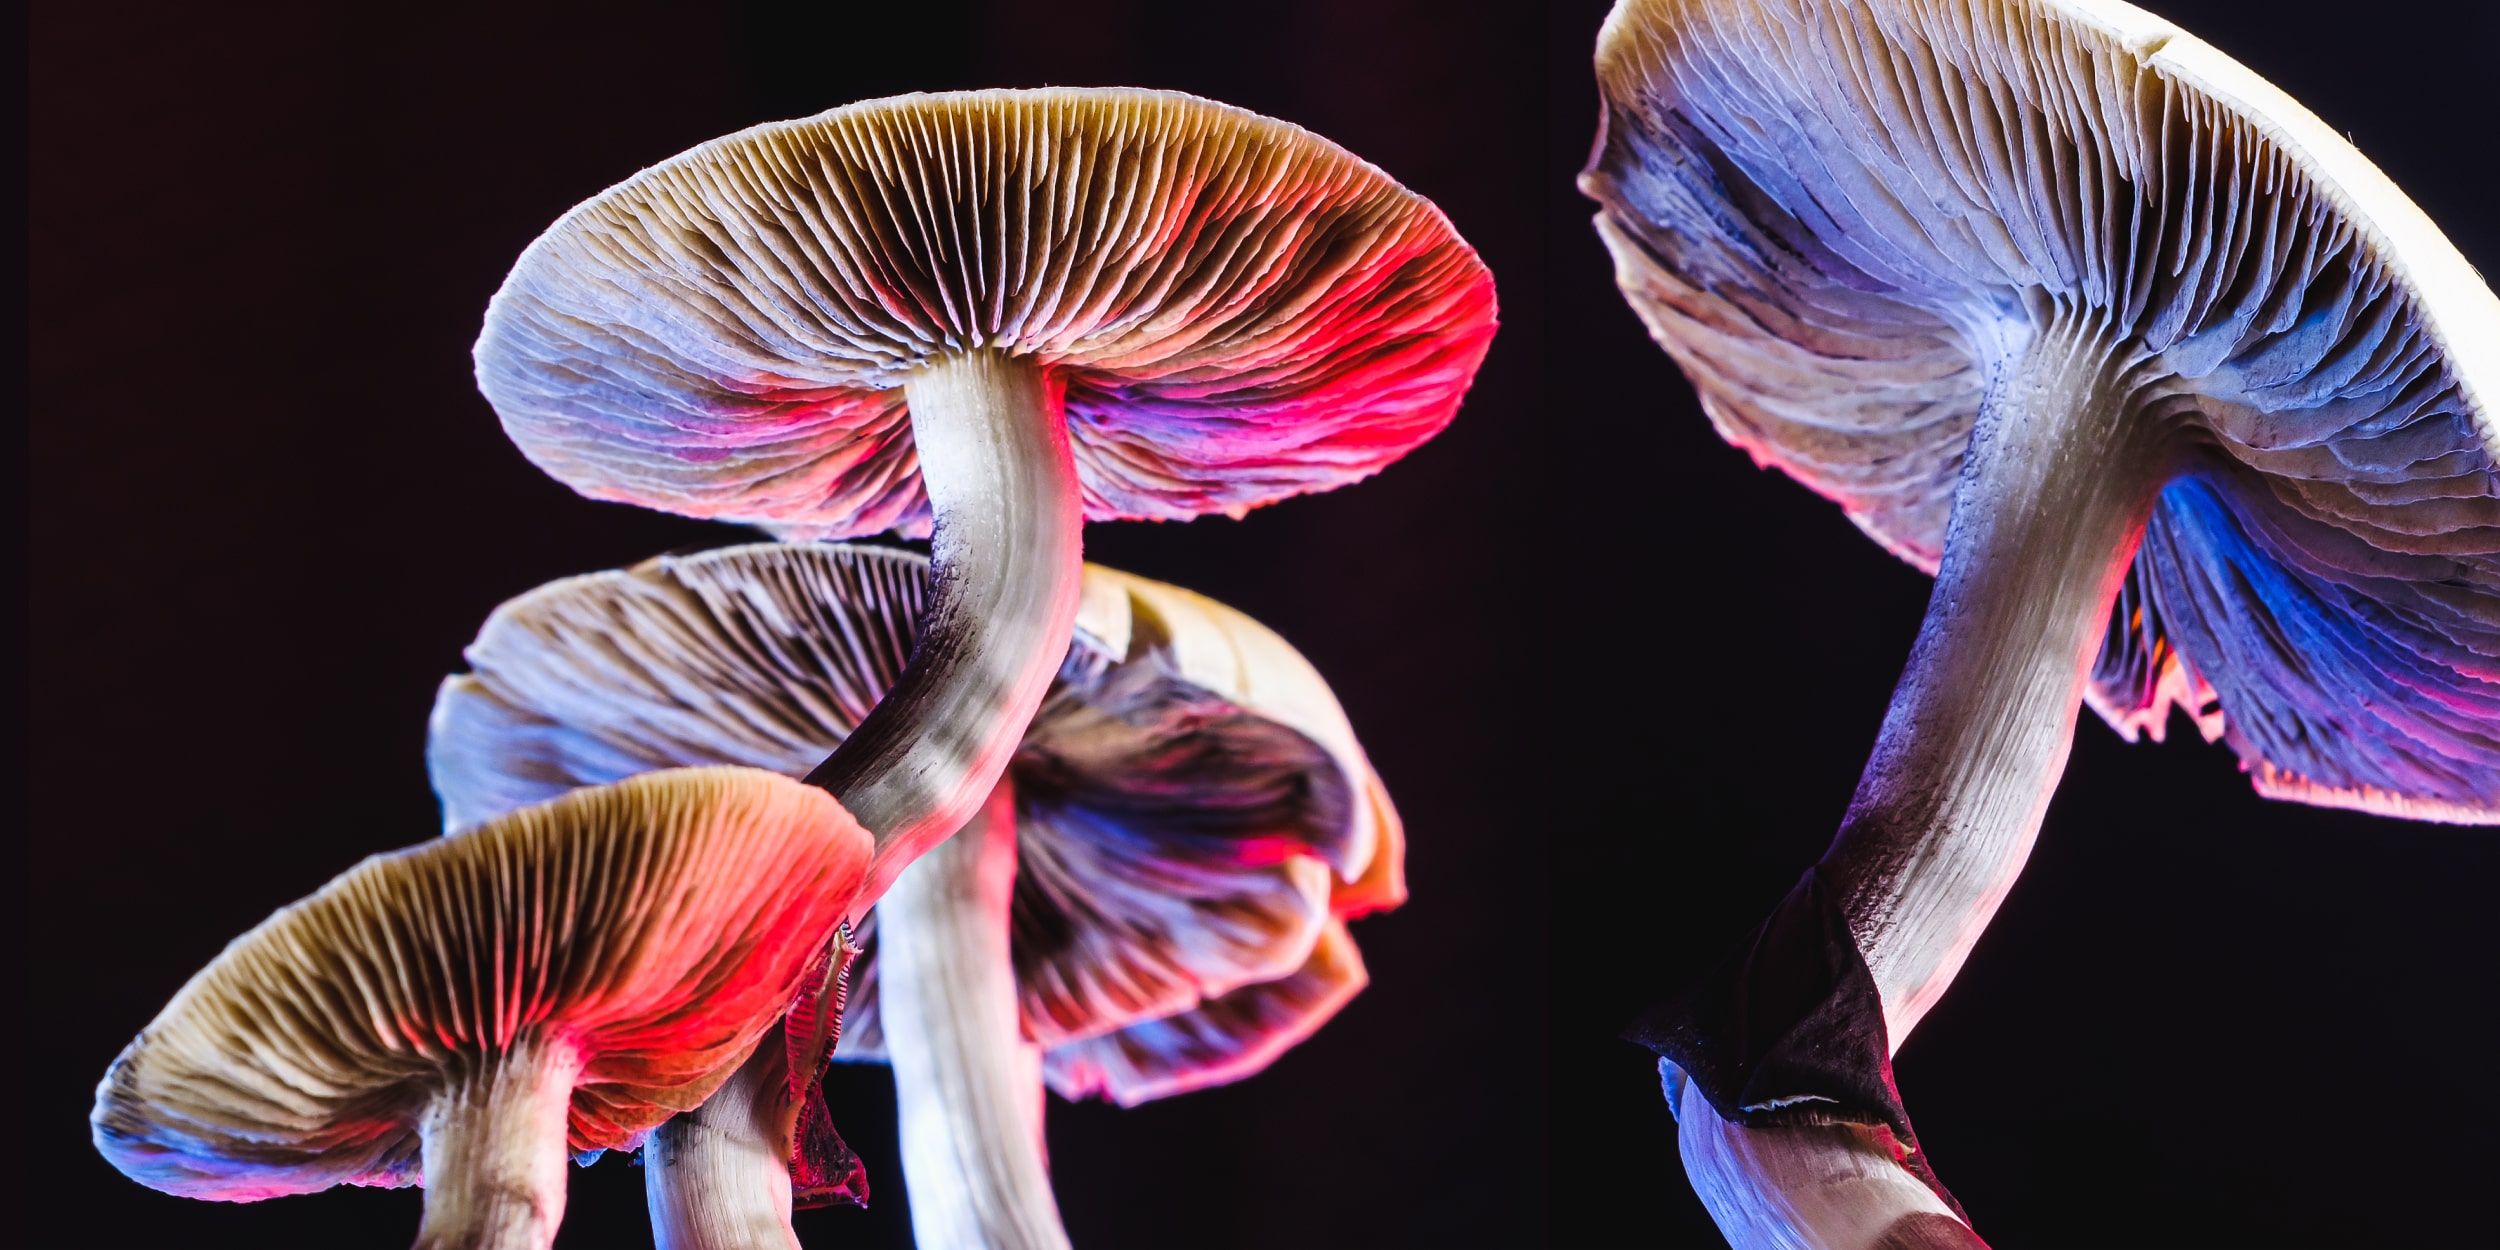 Самый большой живой организм на Земле – этот гриб. Ему 2400 лет и он занимает площадь 840 гектаров